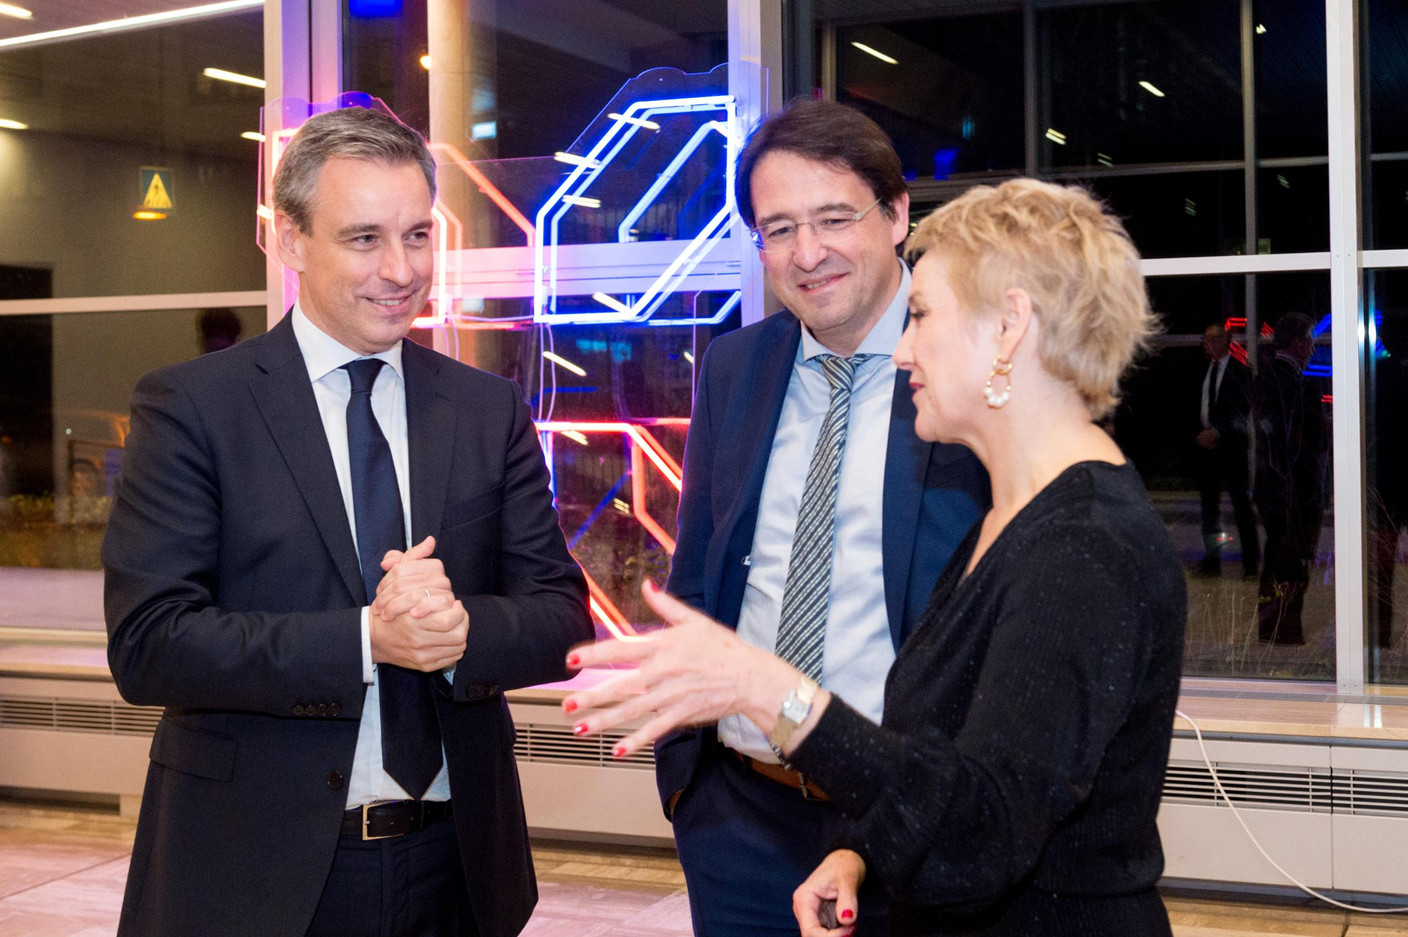 Claude Meisch (Ministre de l’Enseignement supérieur et de la Recherche), Mario Grotz et Sasha Baillie (Luxinnovation) (Photo: Marie De Decker)